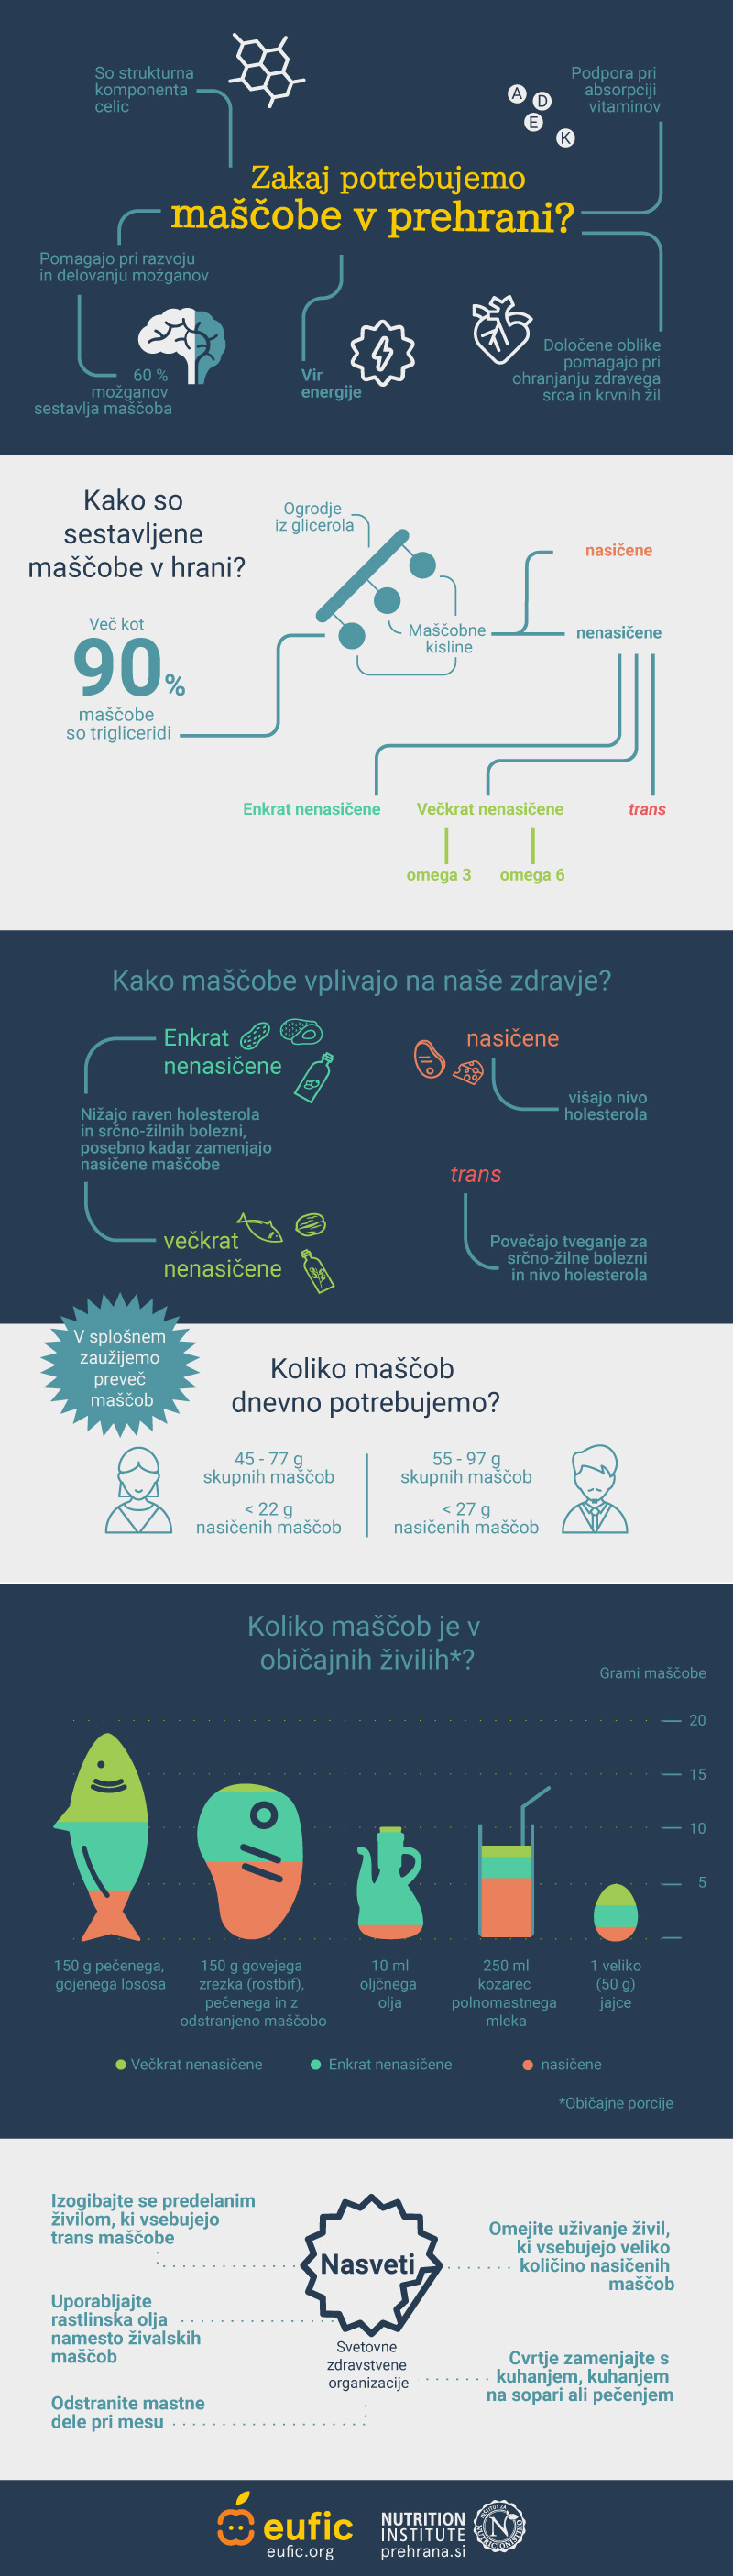 EUFIC PREHRANA infografika mascobe